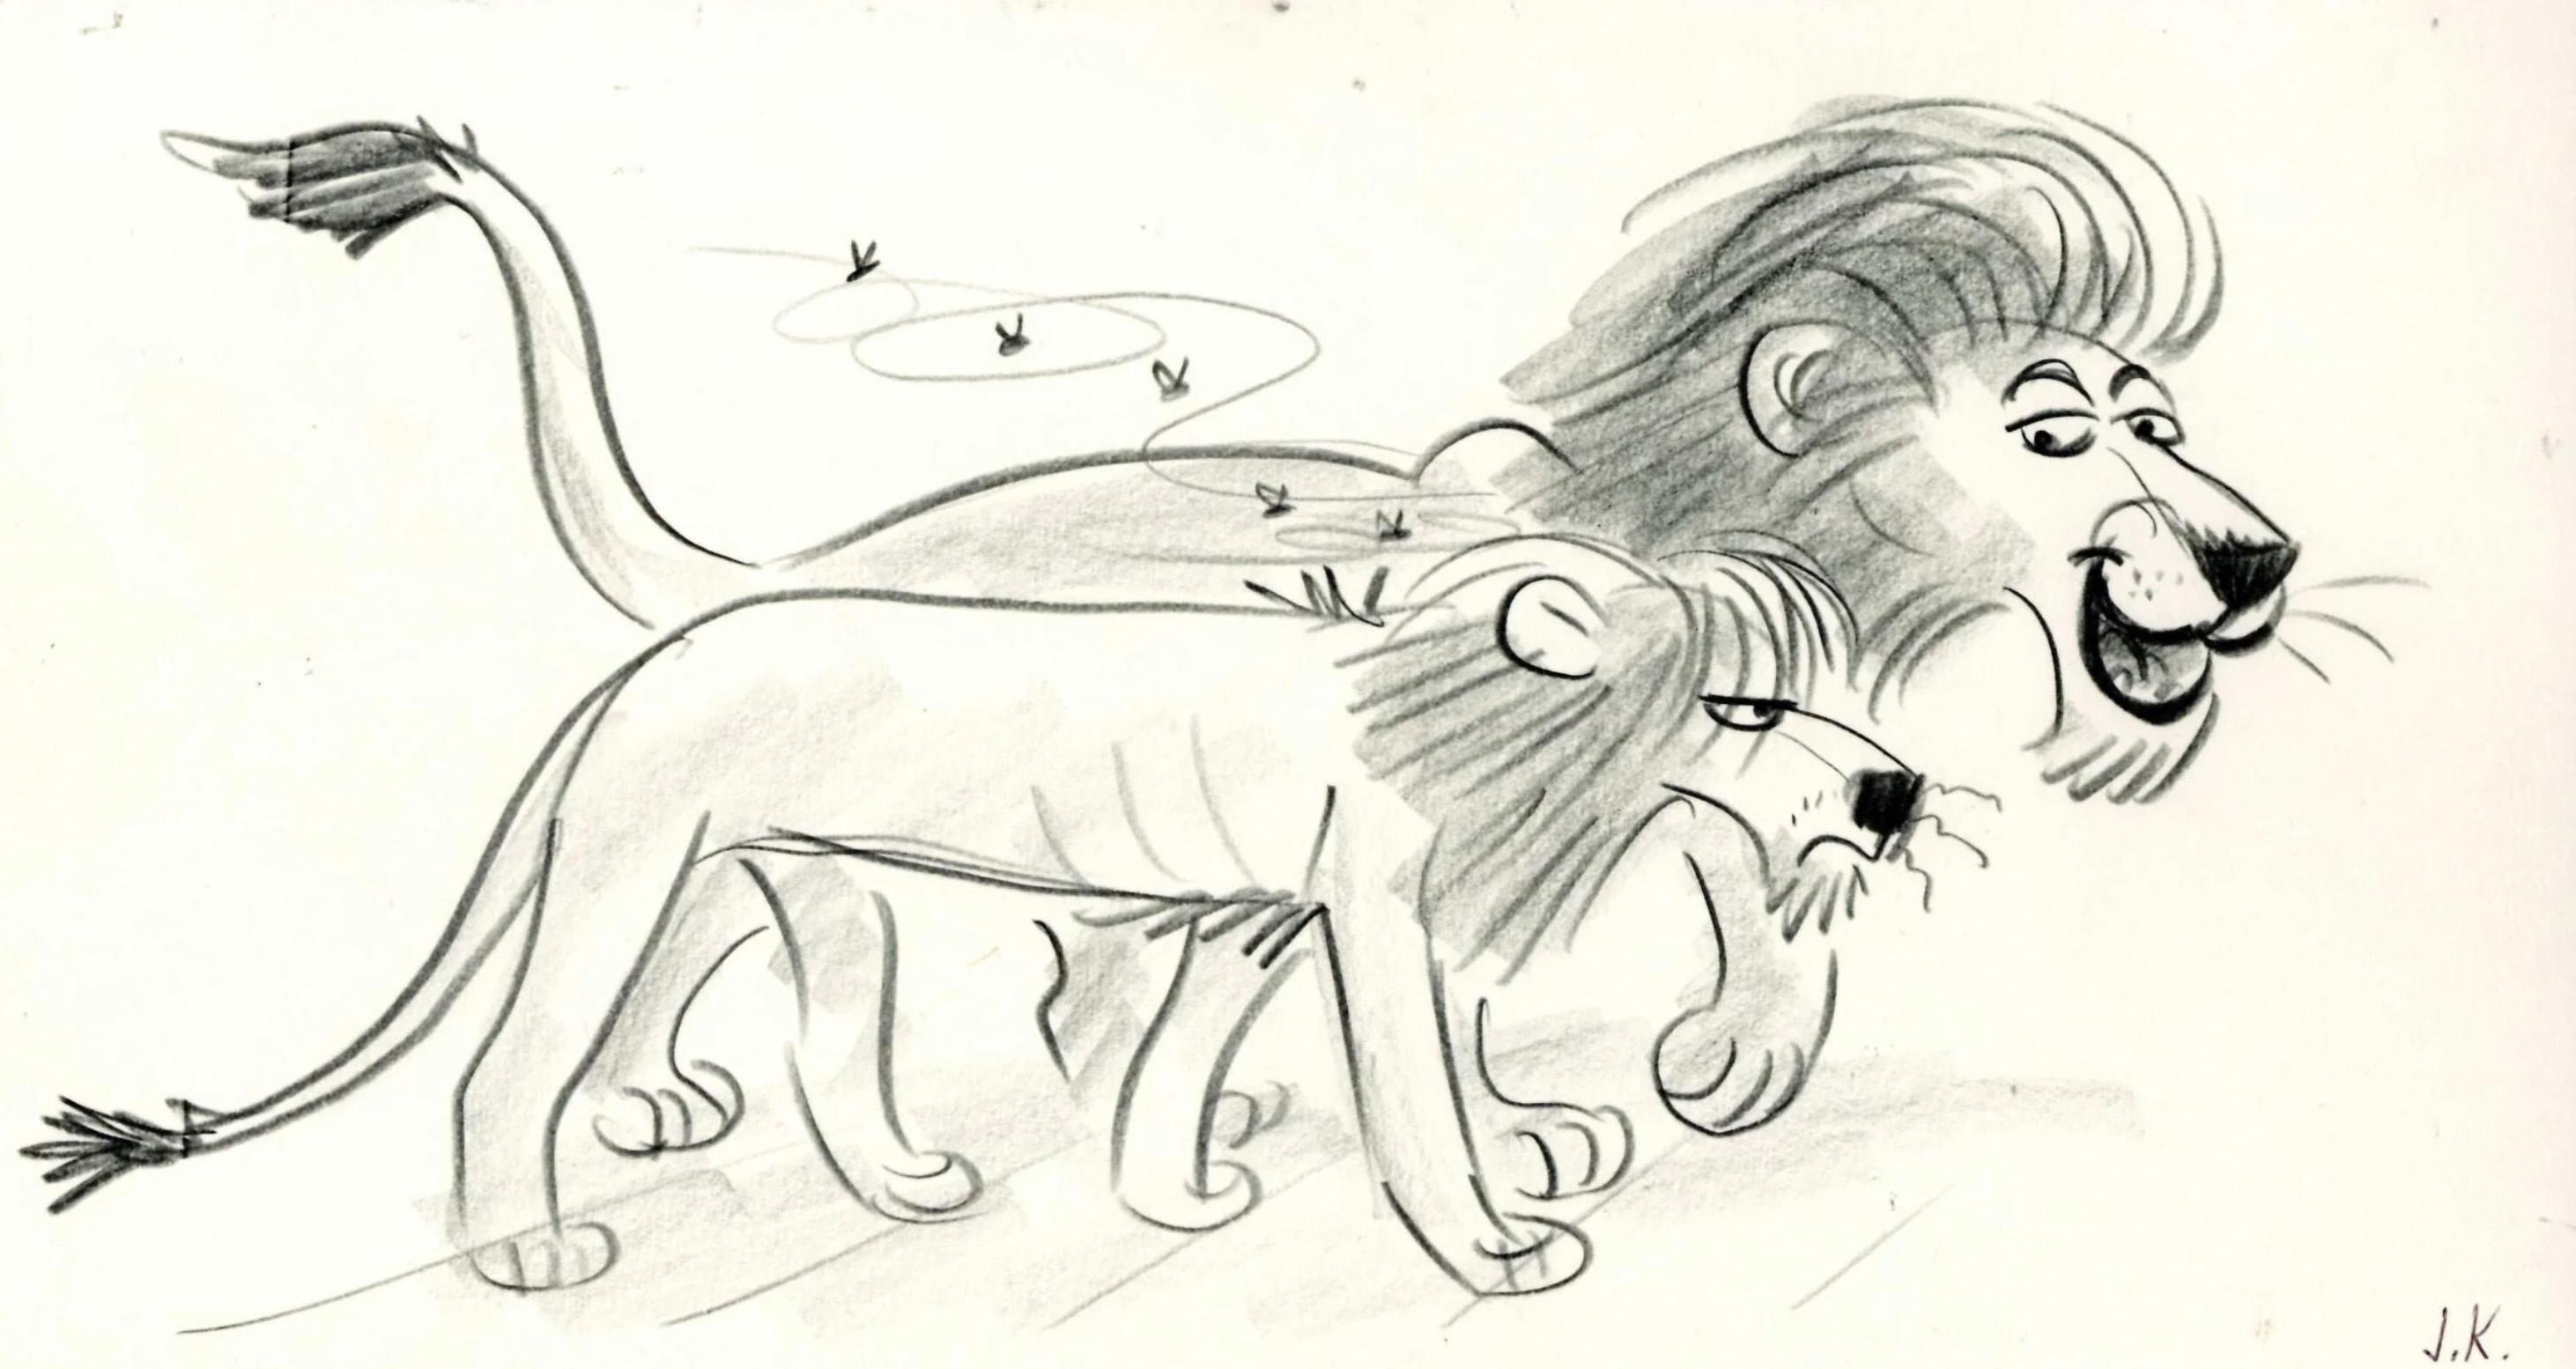 Lion King Storyboard: Scar and Mufasa - Art by Jorgen Klubien